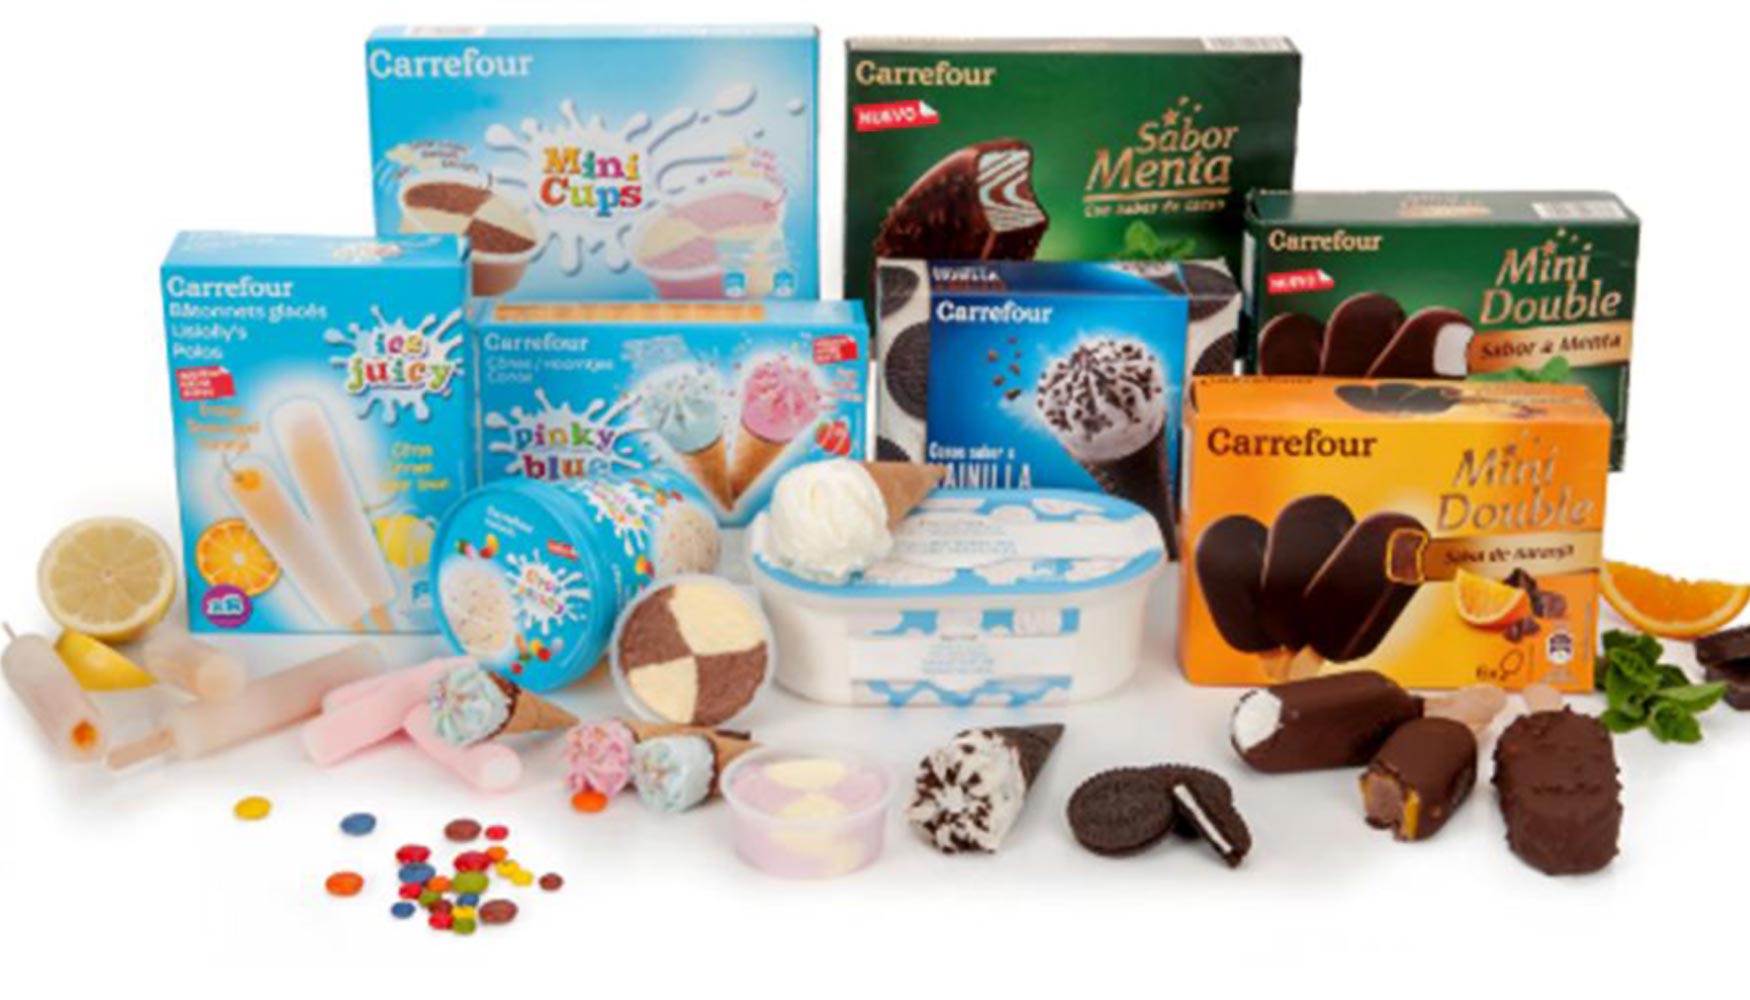 Variedades de helados de Carrefour